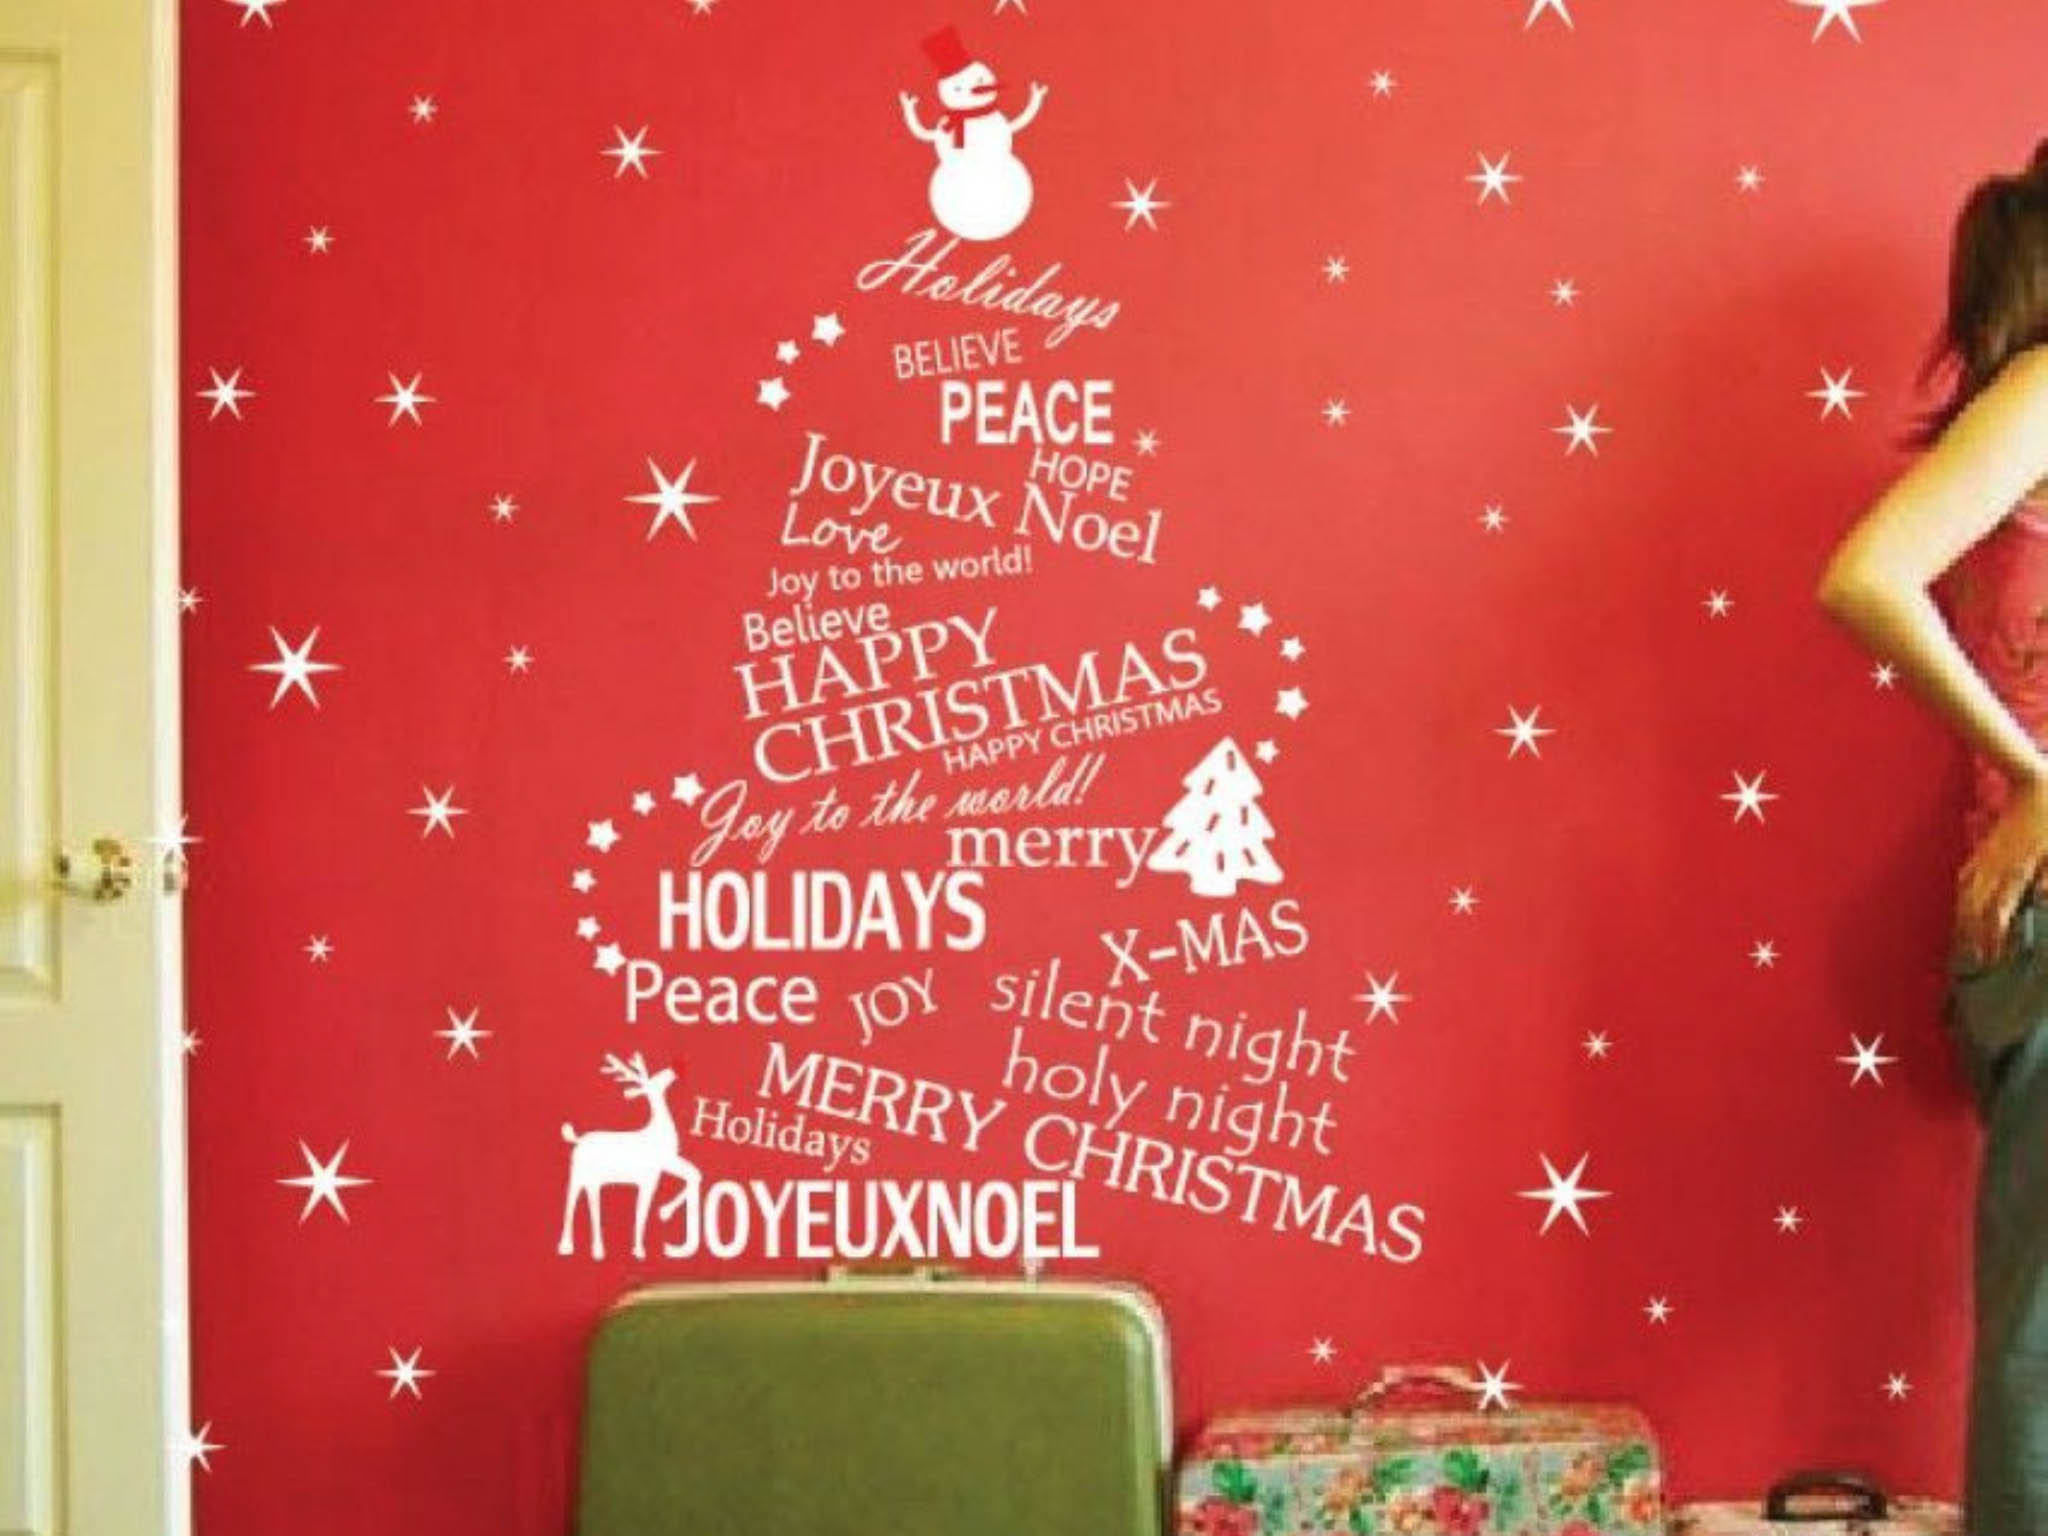 Hình decal Noel dán tại tường gần cửa ra vào